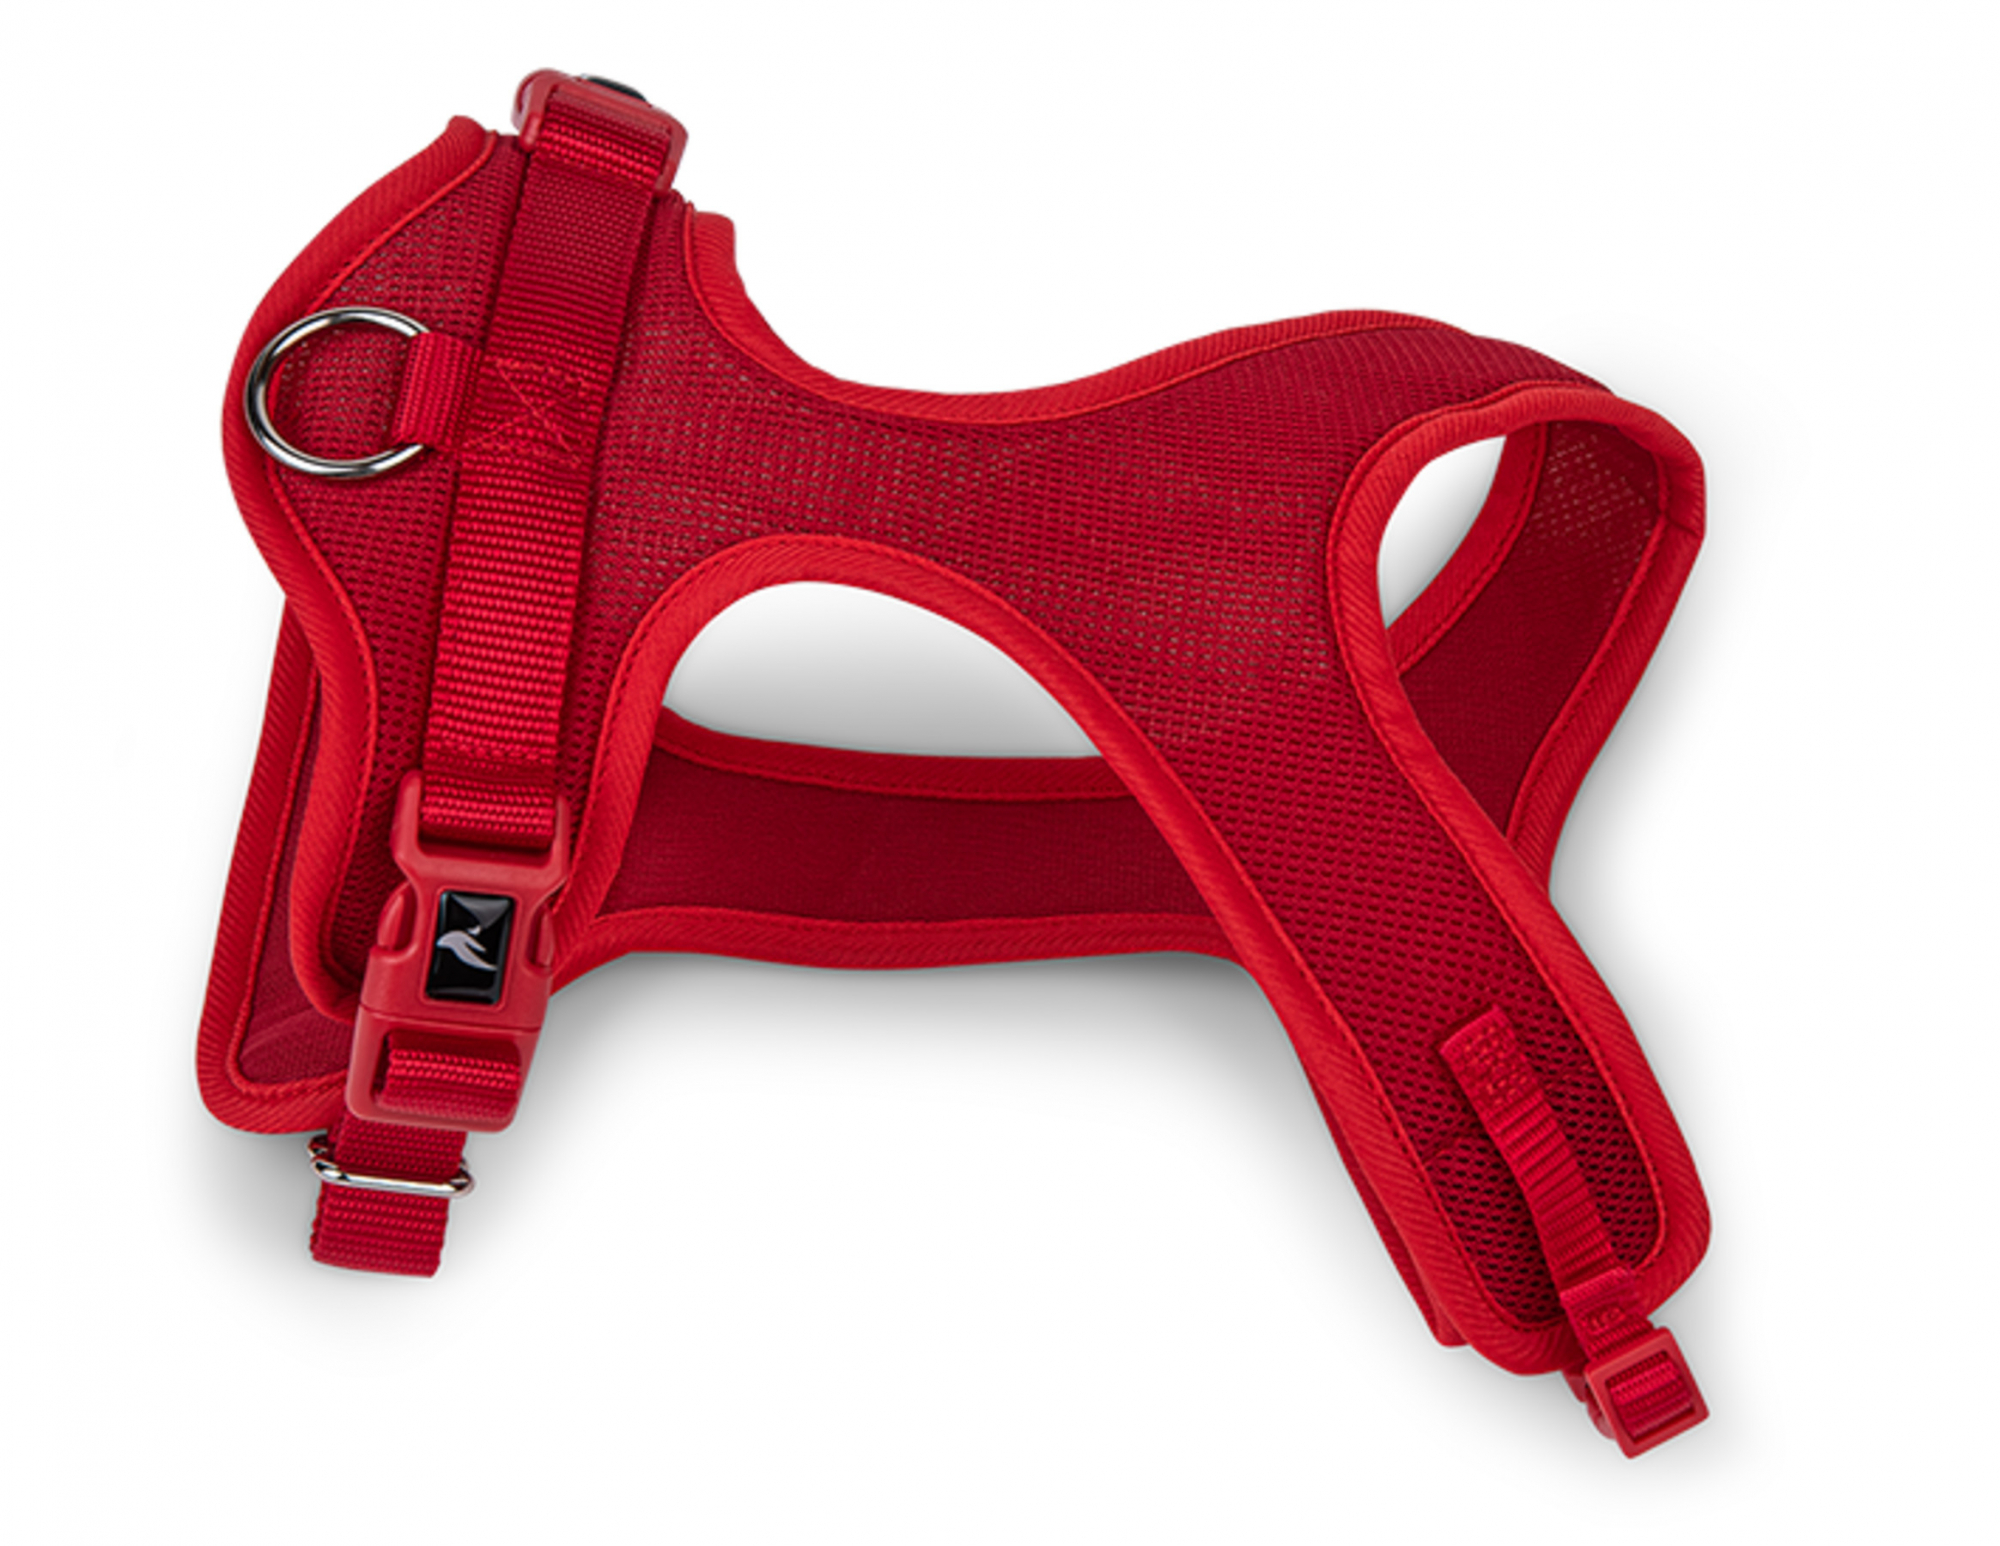 Harnais Comfort Mesh rouge pour chien - plusieurs tailles disponibles